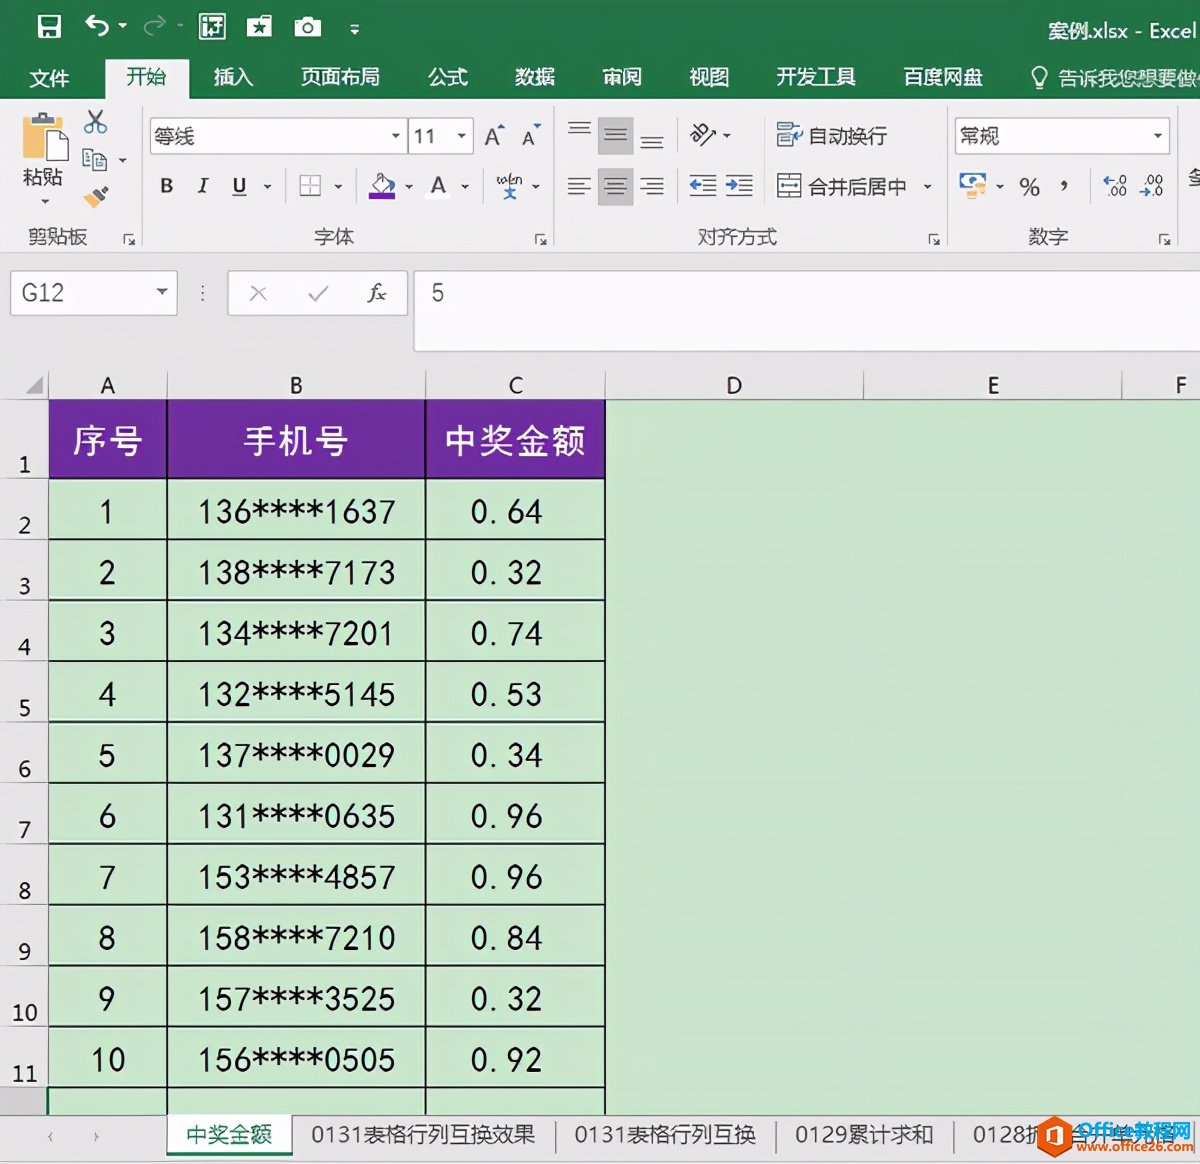 不用安装其他软件，Excel自带的屏幕截图功能即可快速截图